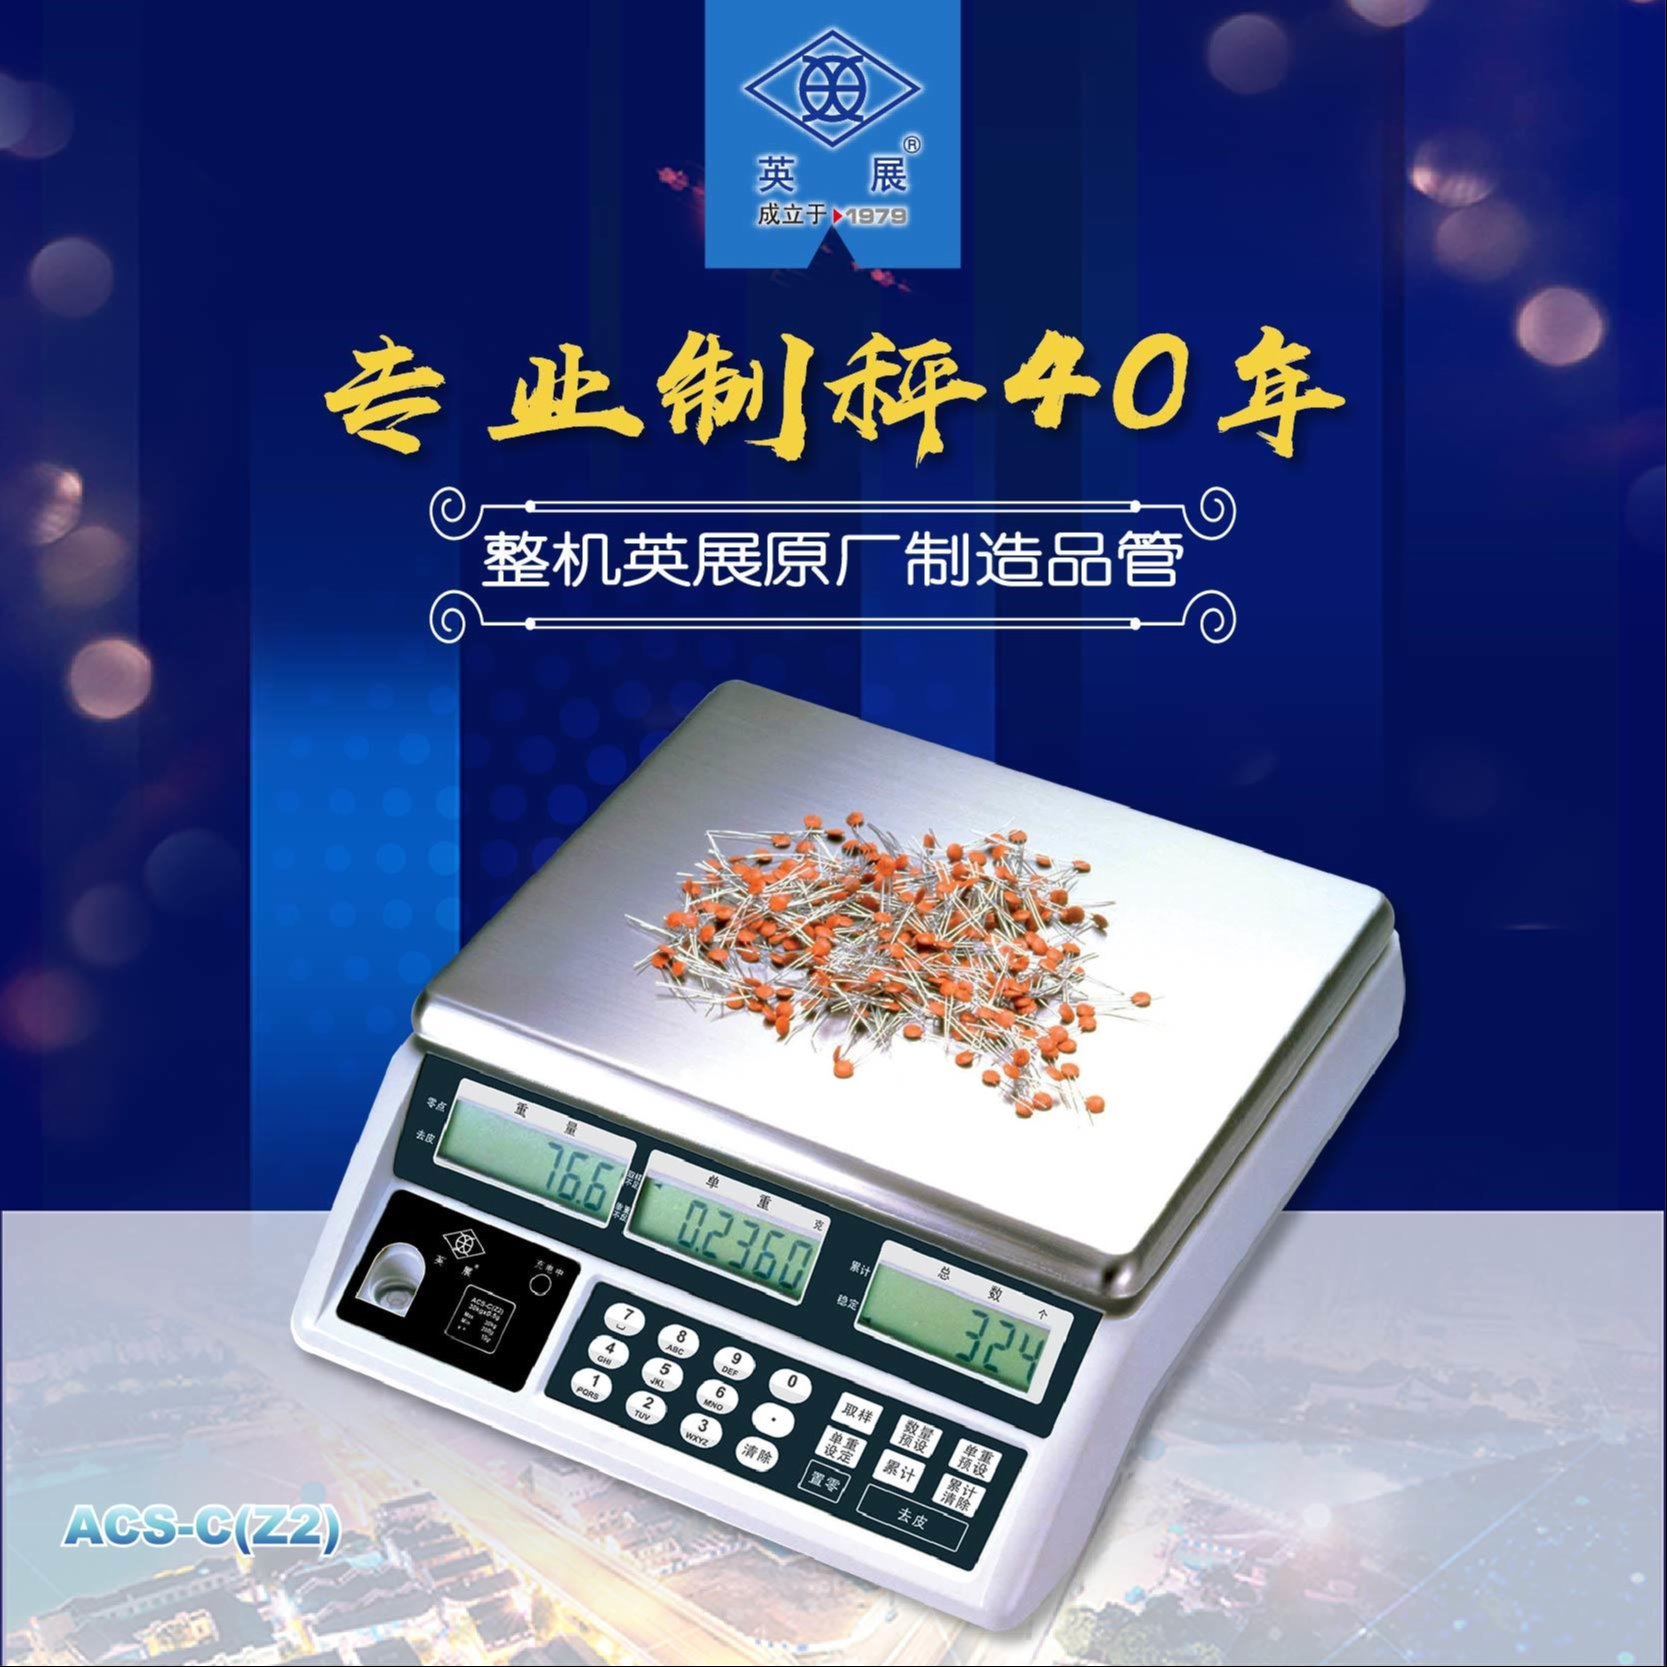 英展计数电子秤 ，上海英展高精计数桌秤，ACS-C(Z2) 计数秤图片